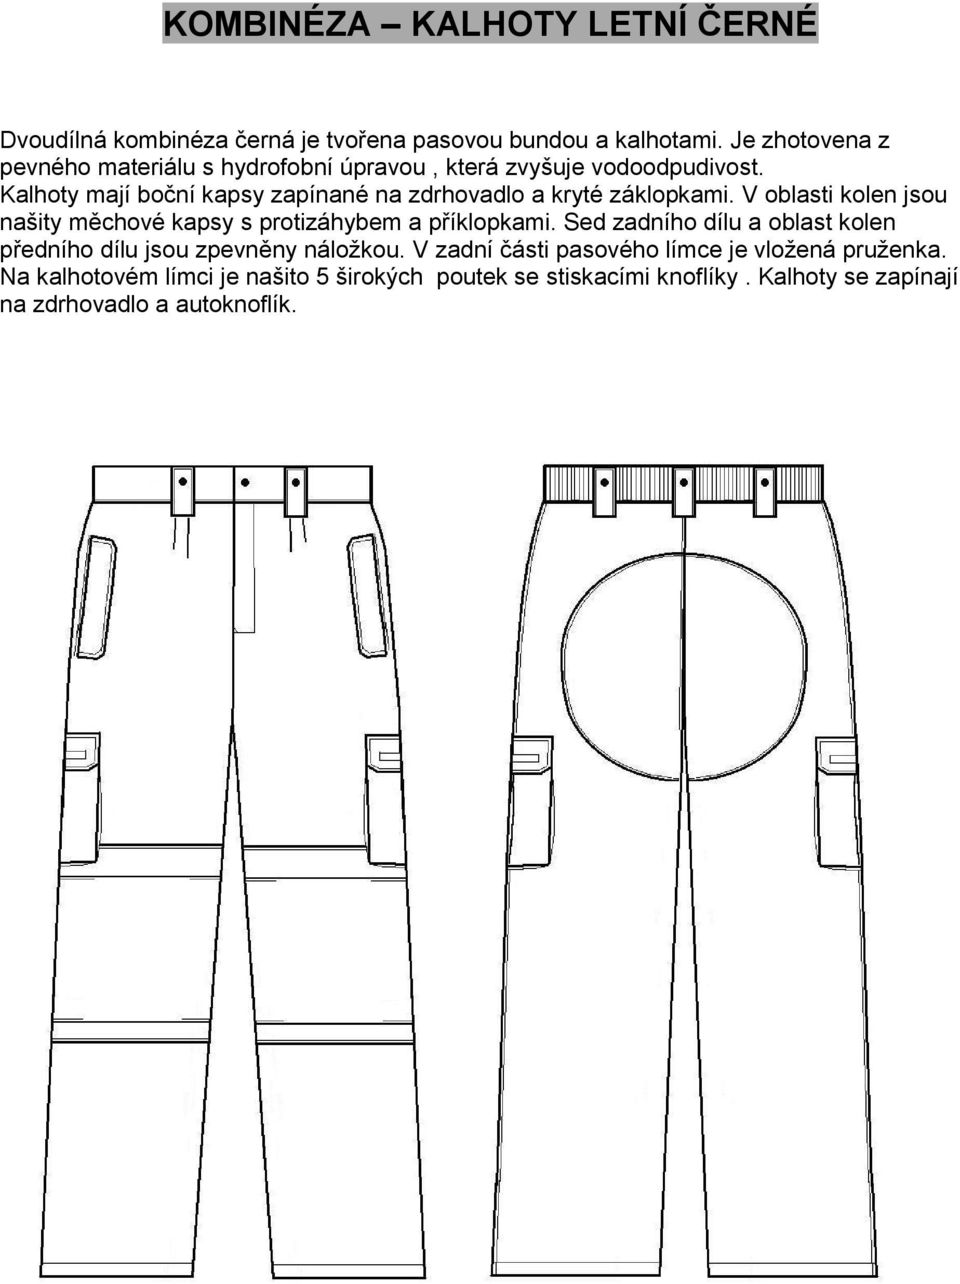 Kalhoty mají boční kapsy zapínané na zdrhovadlo a kryté záklopkami. V oblasti kolen jsou našity měchové kapsy s protizáhybem a příklopkami.